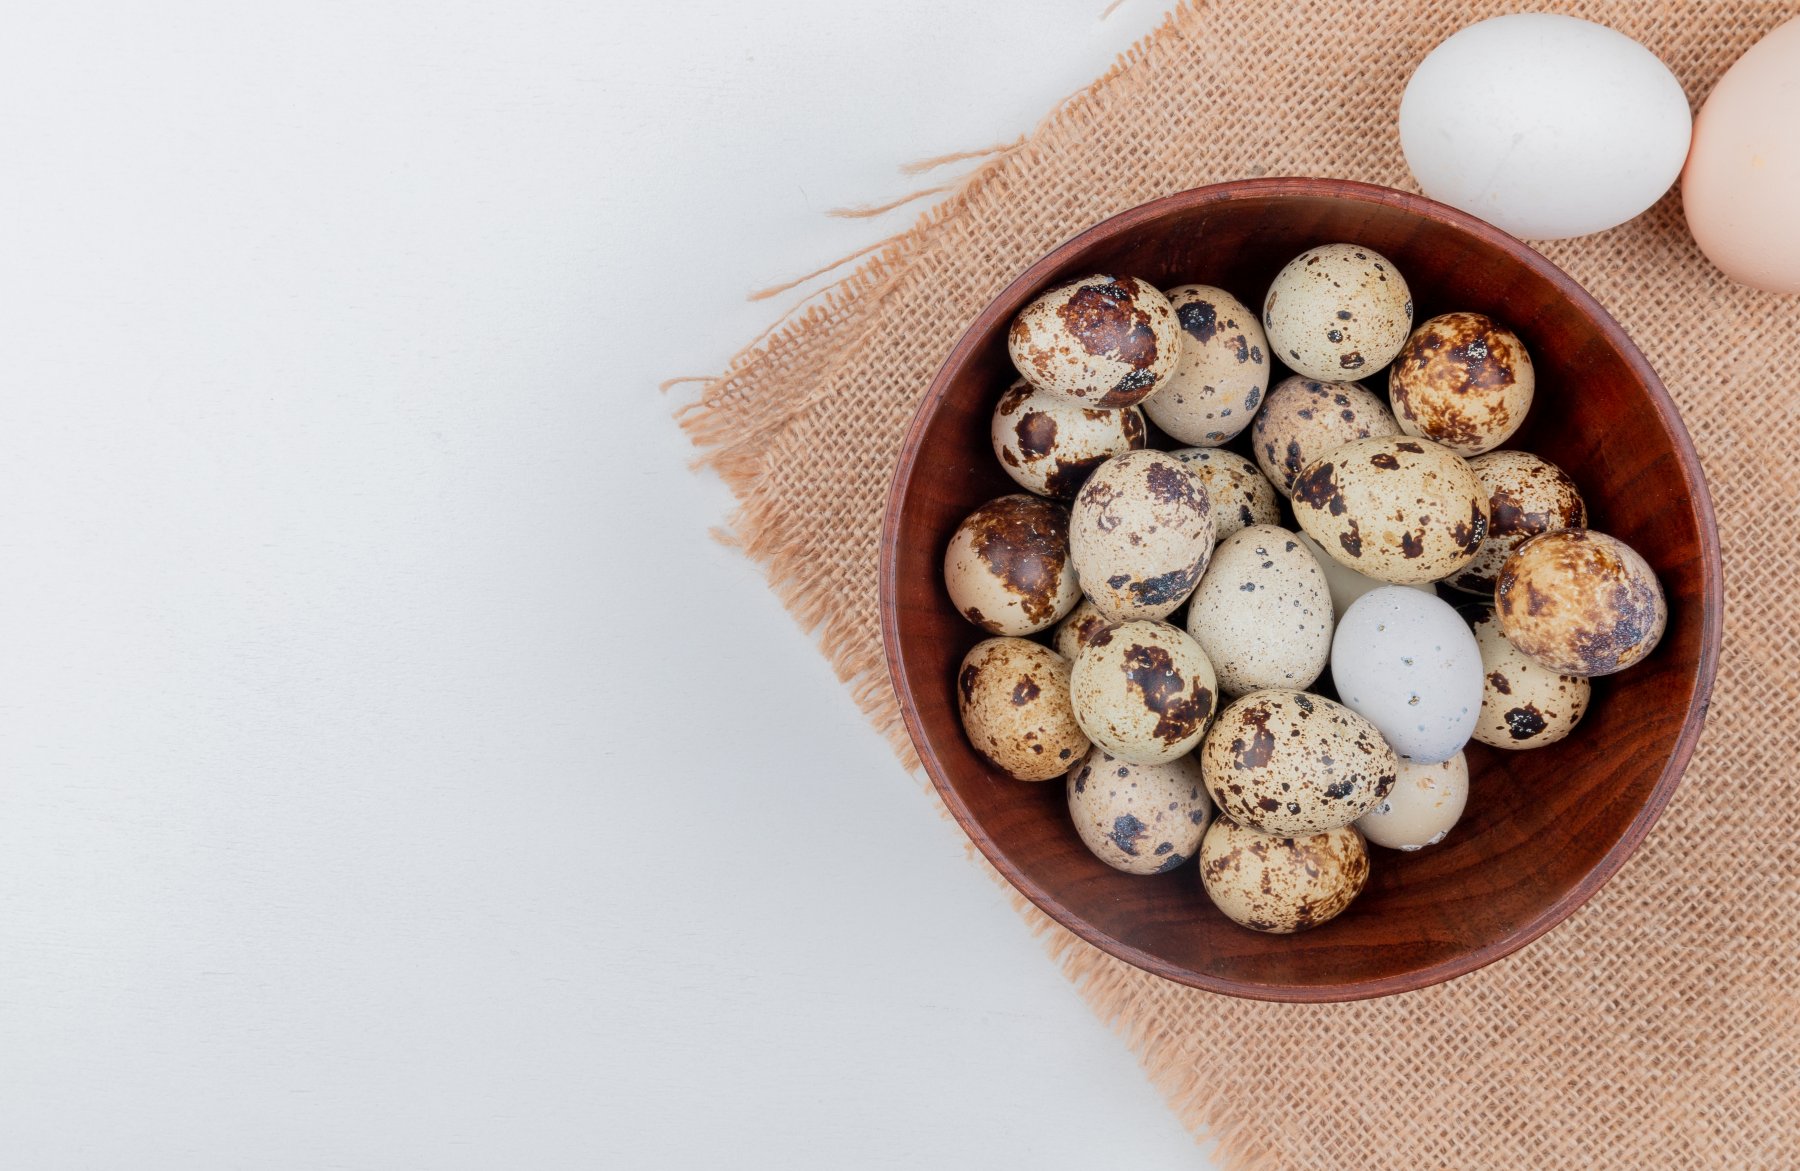 Птицефабрика из Серпухова стала первой в Подмосковье по объемам производства перепелиного яйца